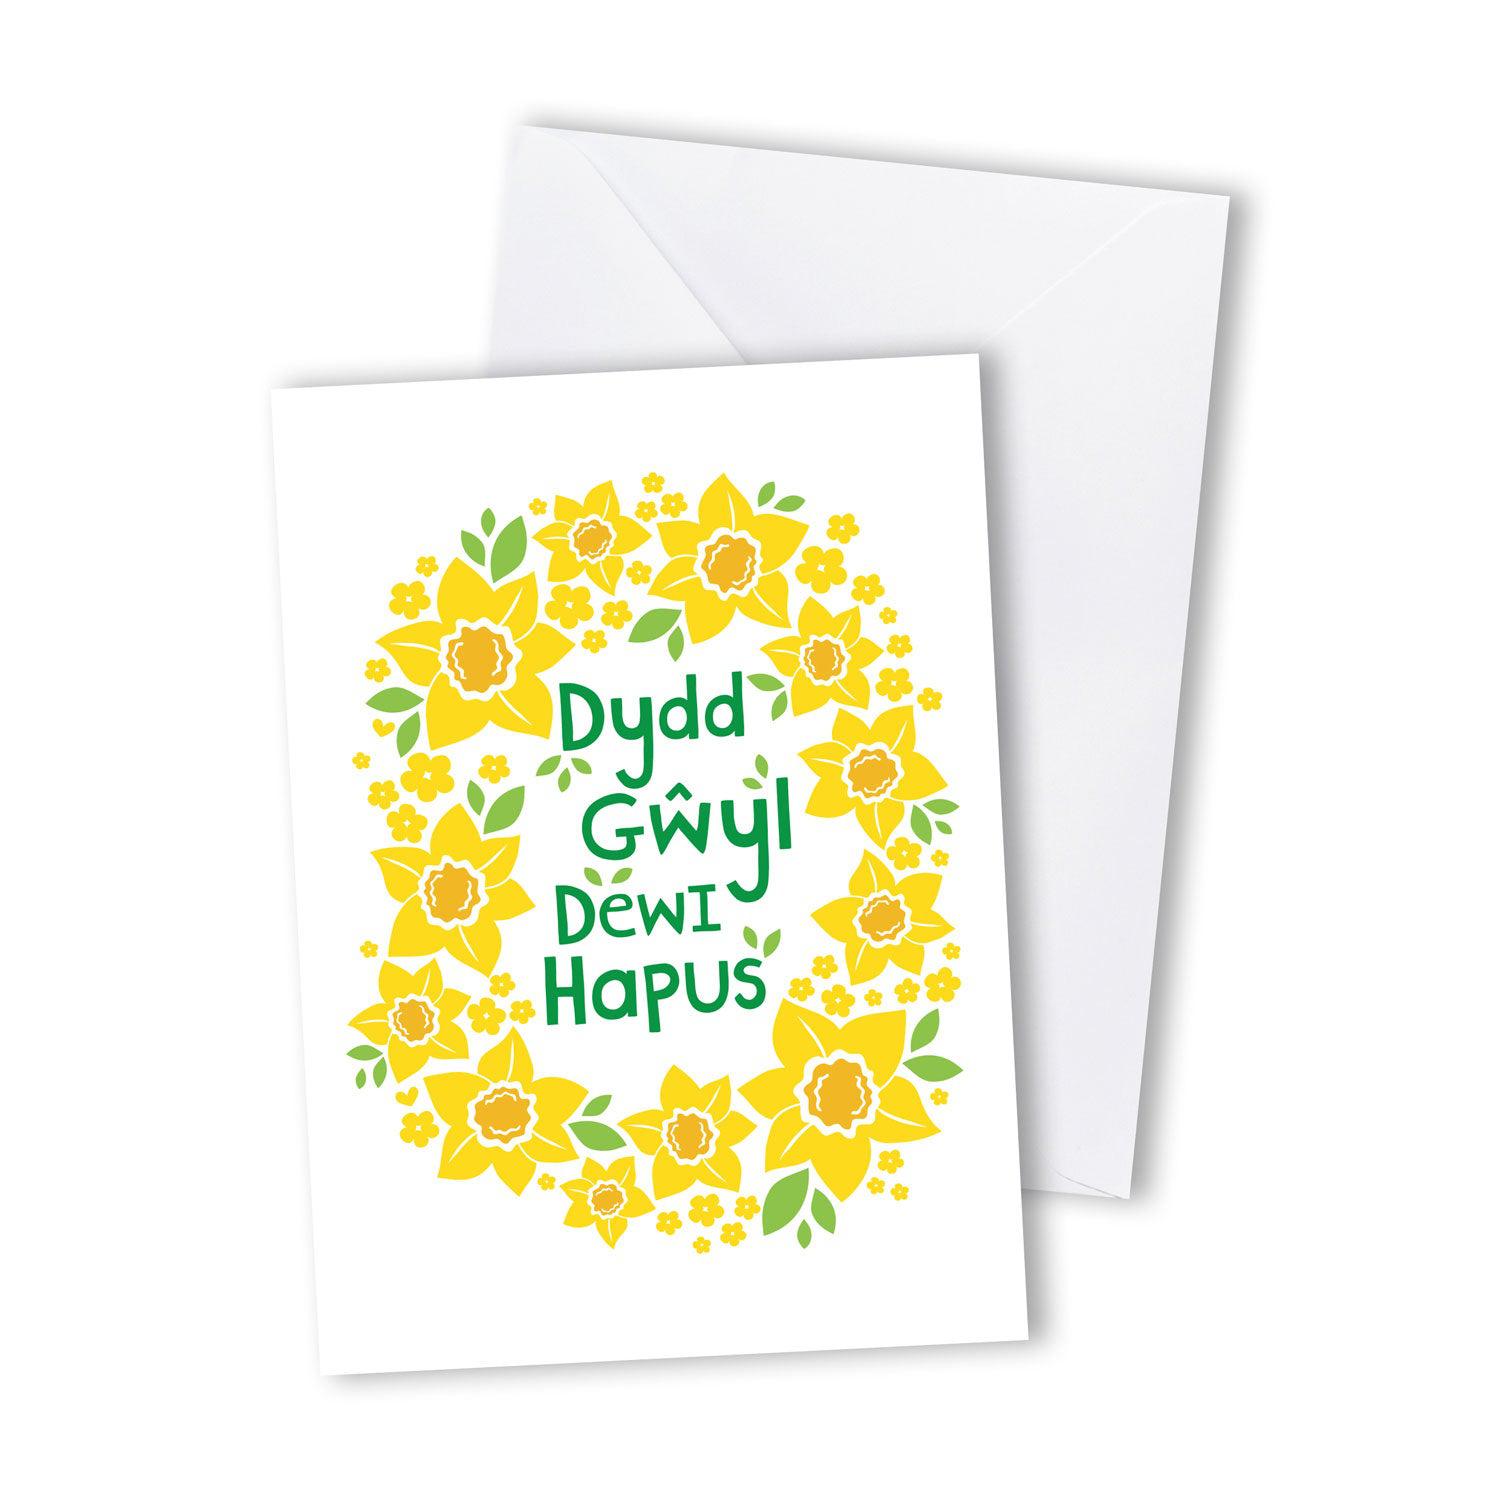 Card - Happy St. David's Day / Dydd Gwyl Dewi Hapus - Daffodils